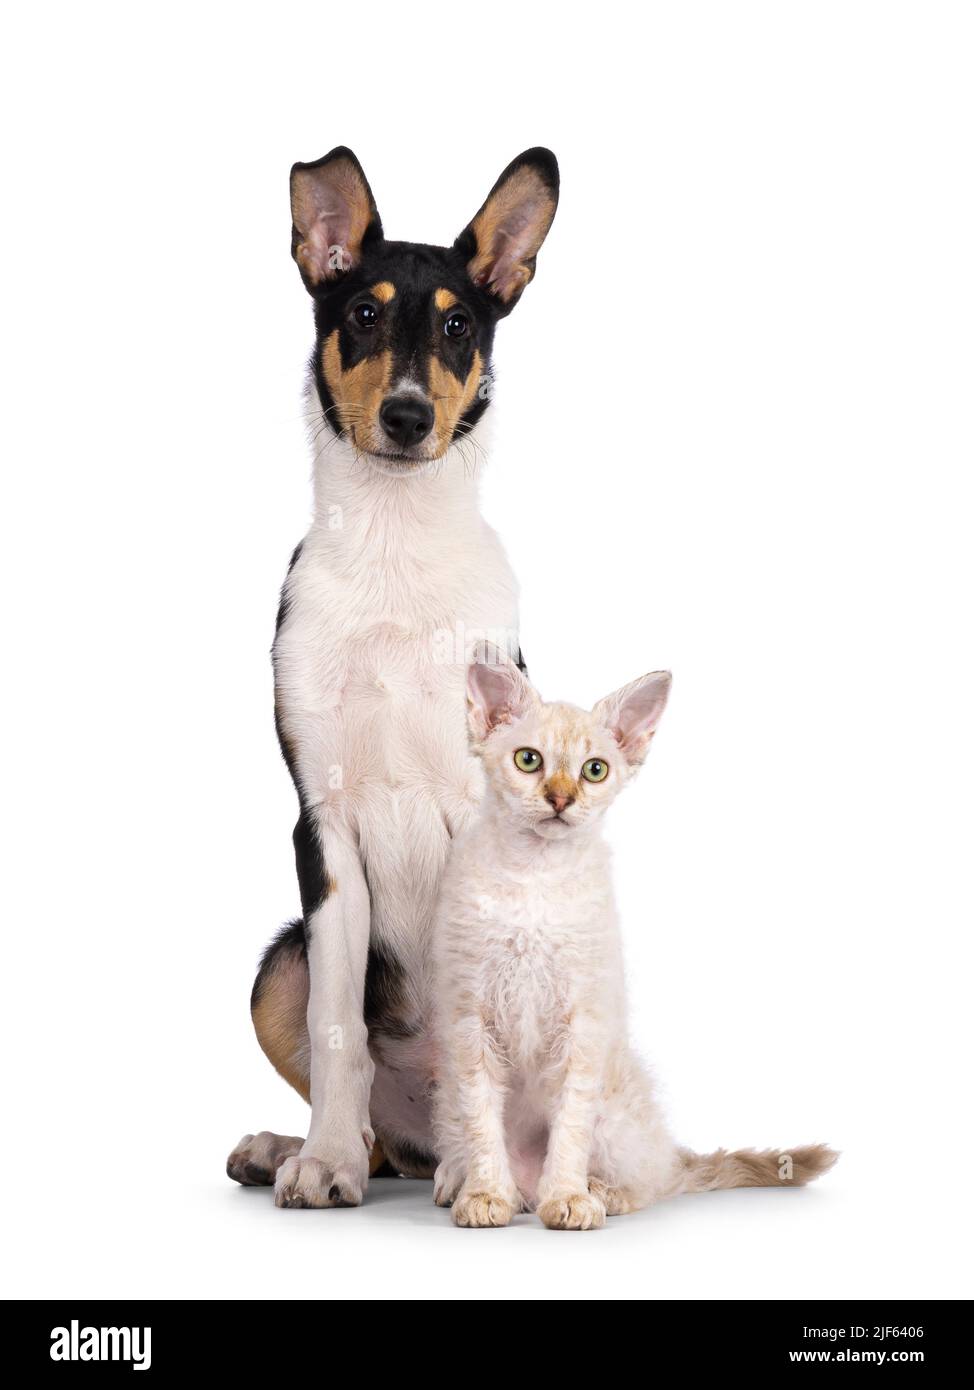 Cucciolo liscio di cane Collie e gattino di gatto LaPerm, seduti insieme. Entrambi guardando lateralmente. Isolato su sfondo bianco. Foto Stock